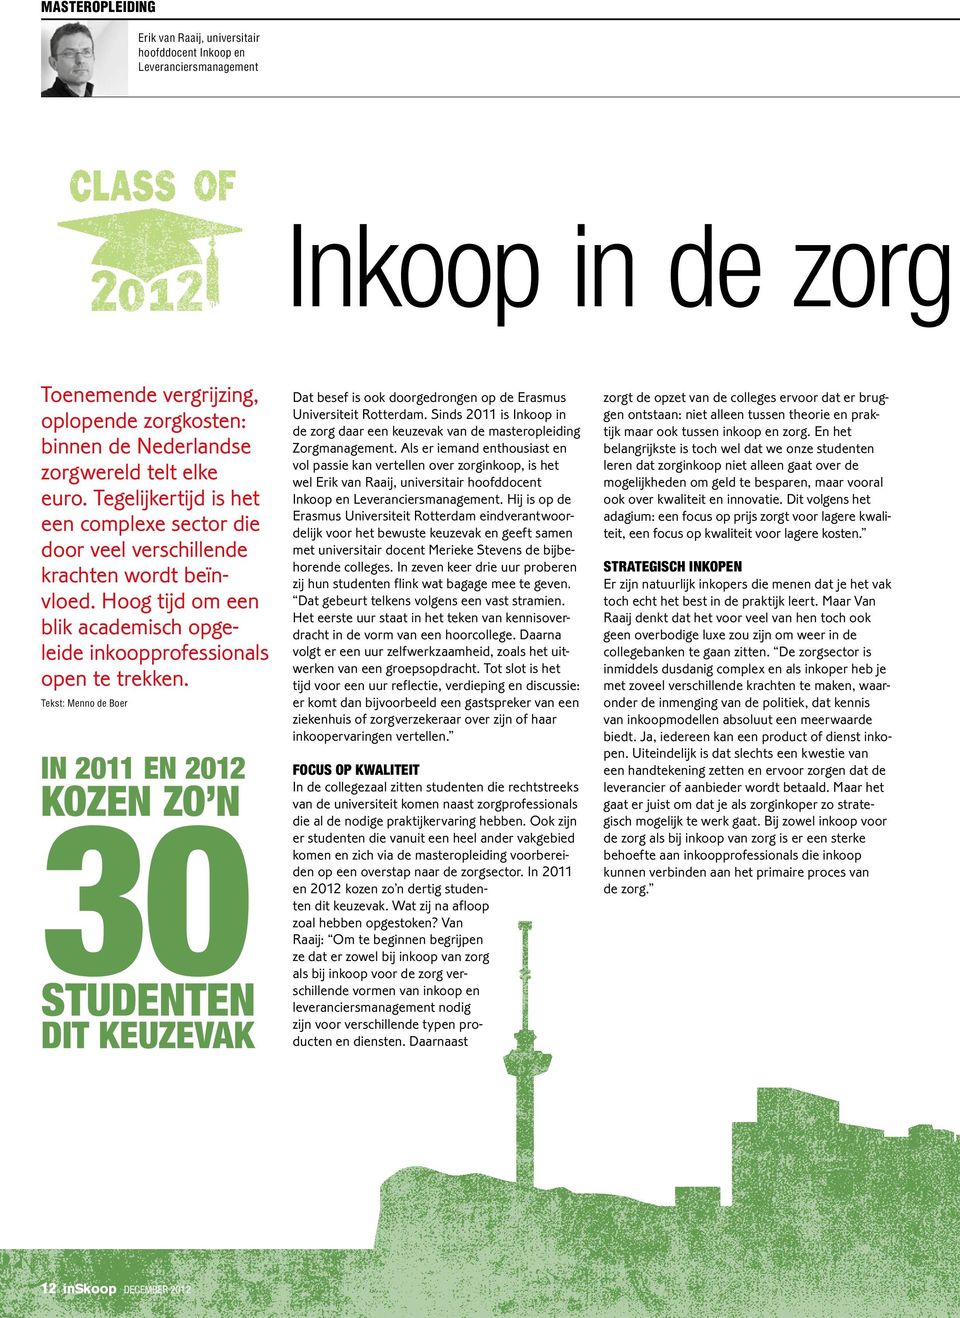 Tekst: Menno de Boer In 2011 en 2012 kozen zo n 30 studenten dit keuzevak Dat besef is ook doorgedrongen op de Erasmus Universiteit Rotterdam.